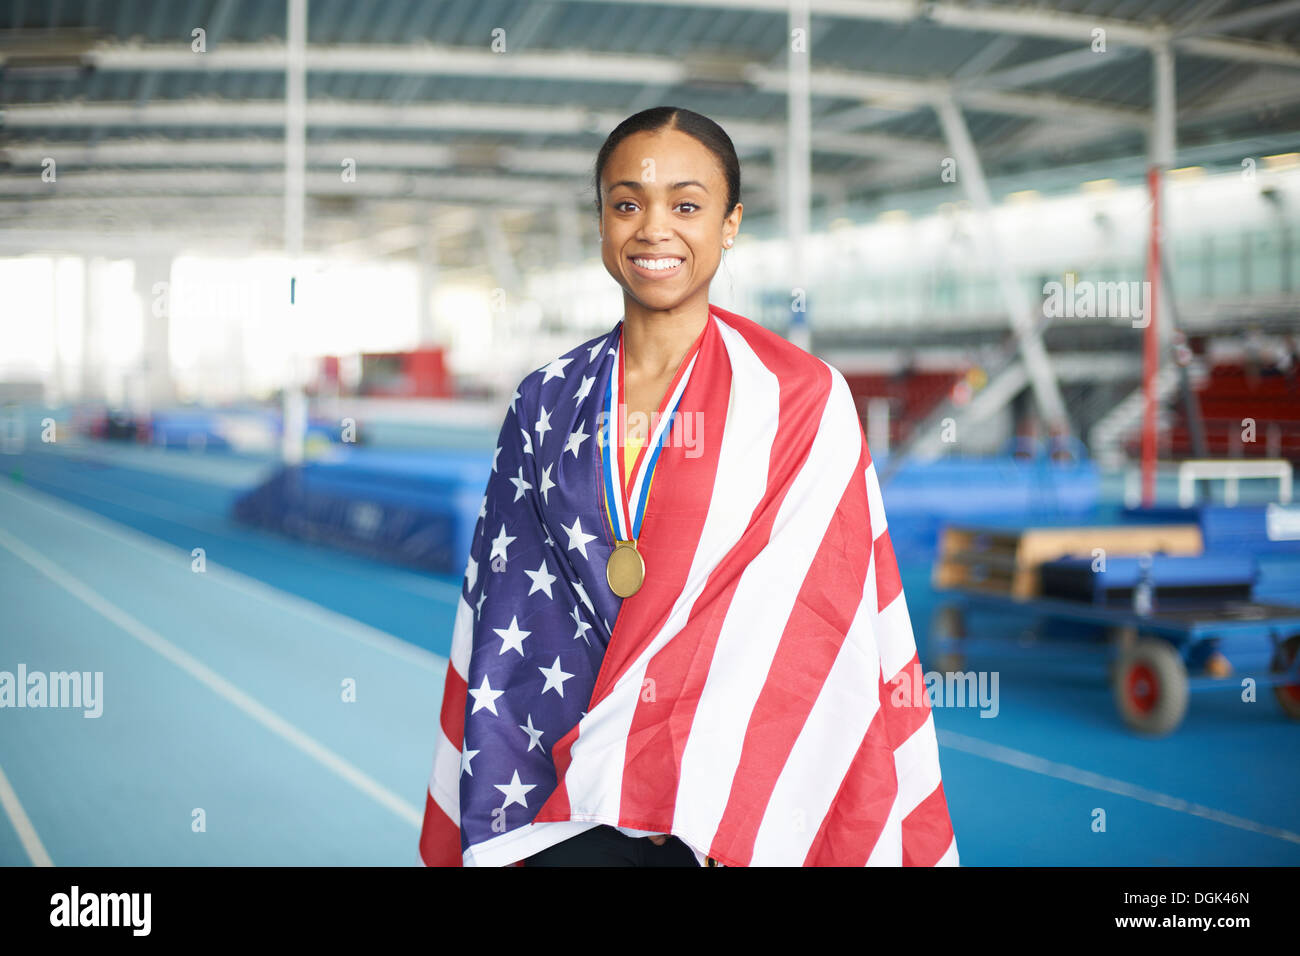 Joven atleta femenina envuelta en la bandera estadounidense con la medalla de oro Foto de stock